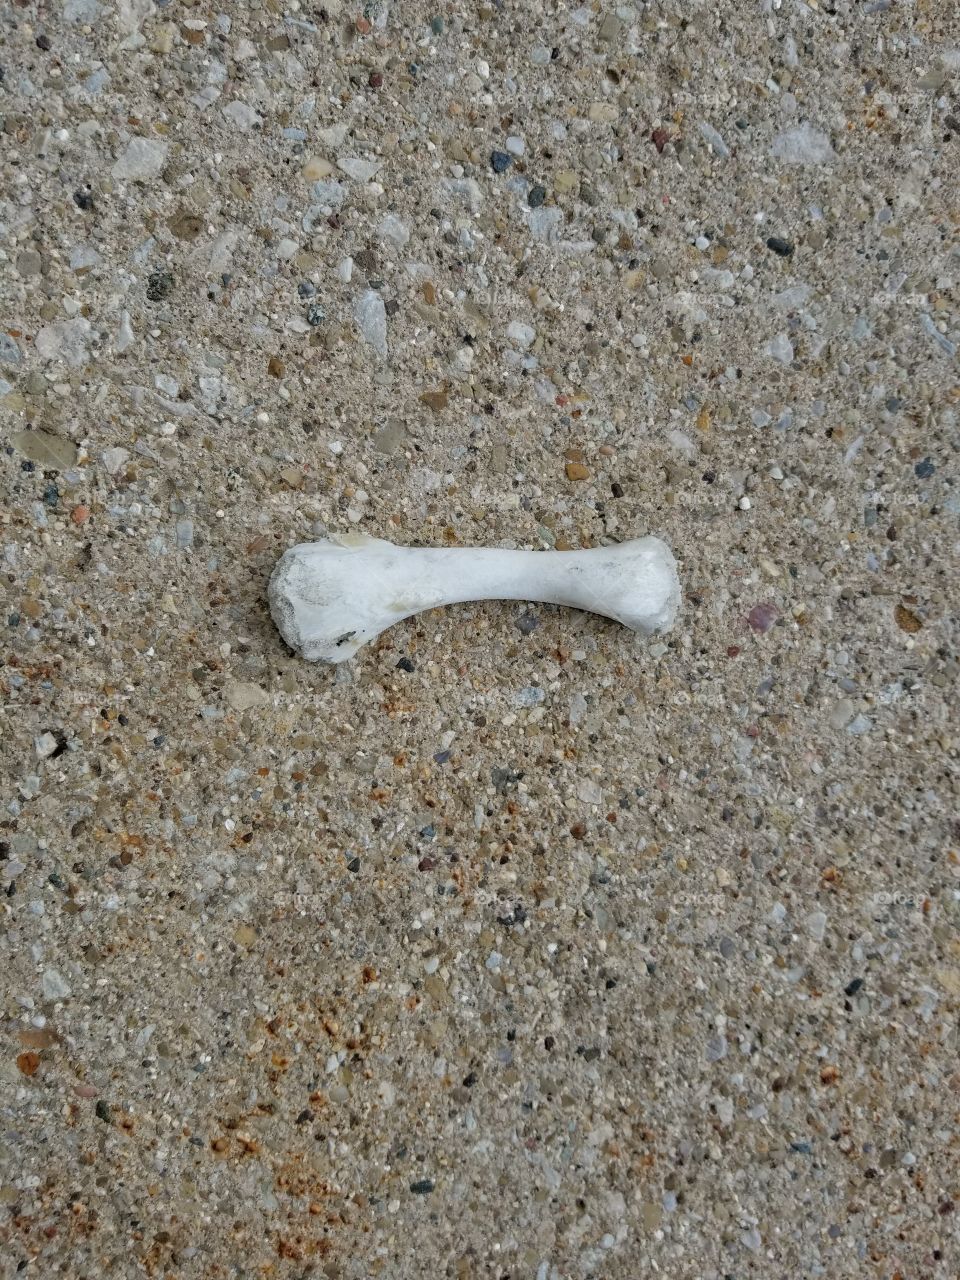 Bone on ground